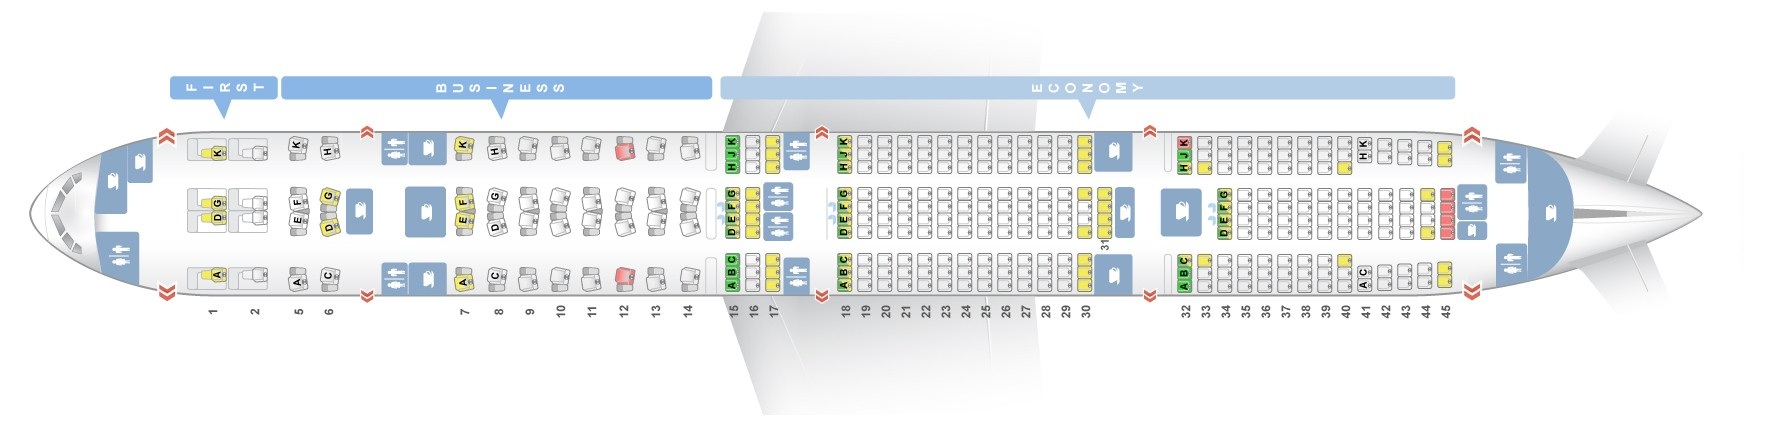 Etihad Airline Seating Chart